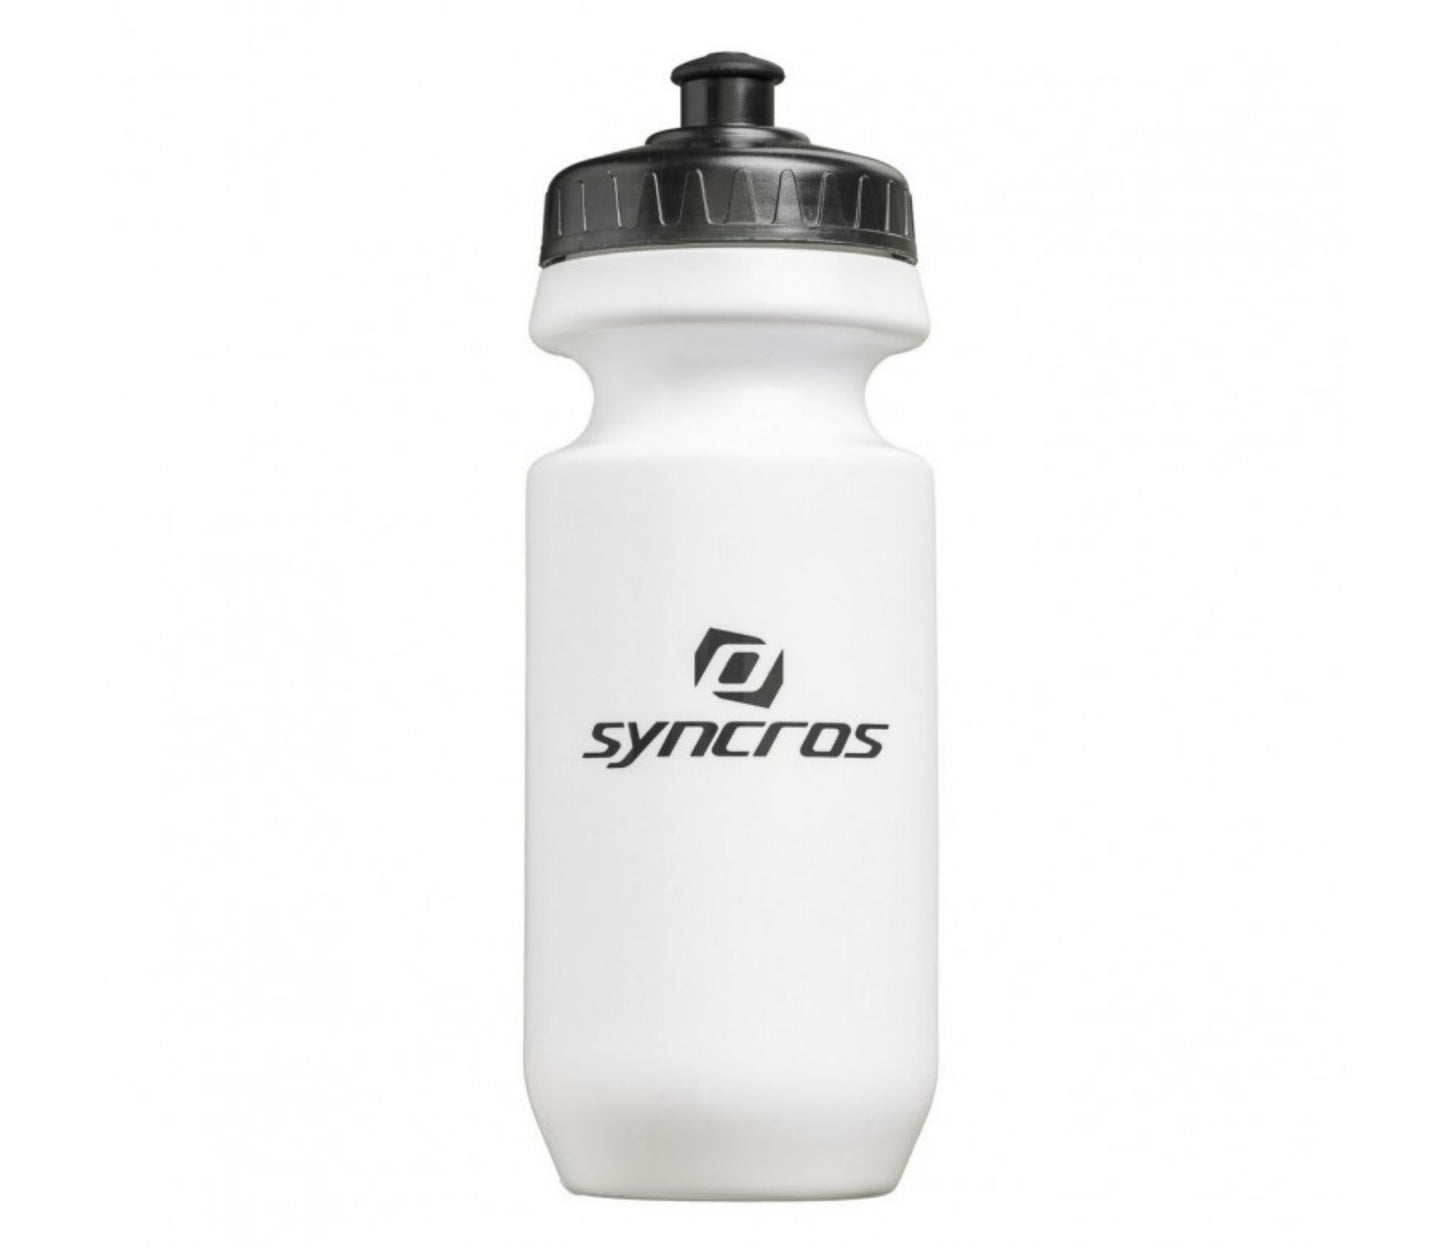 Syncros bottle 500ml